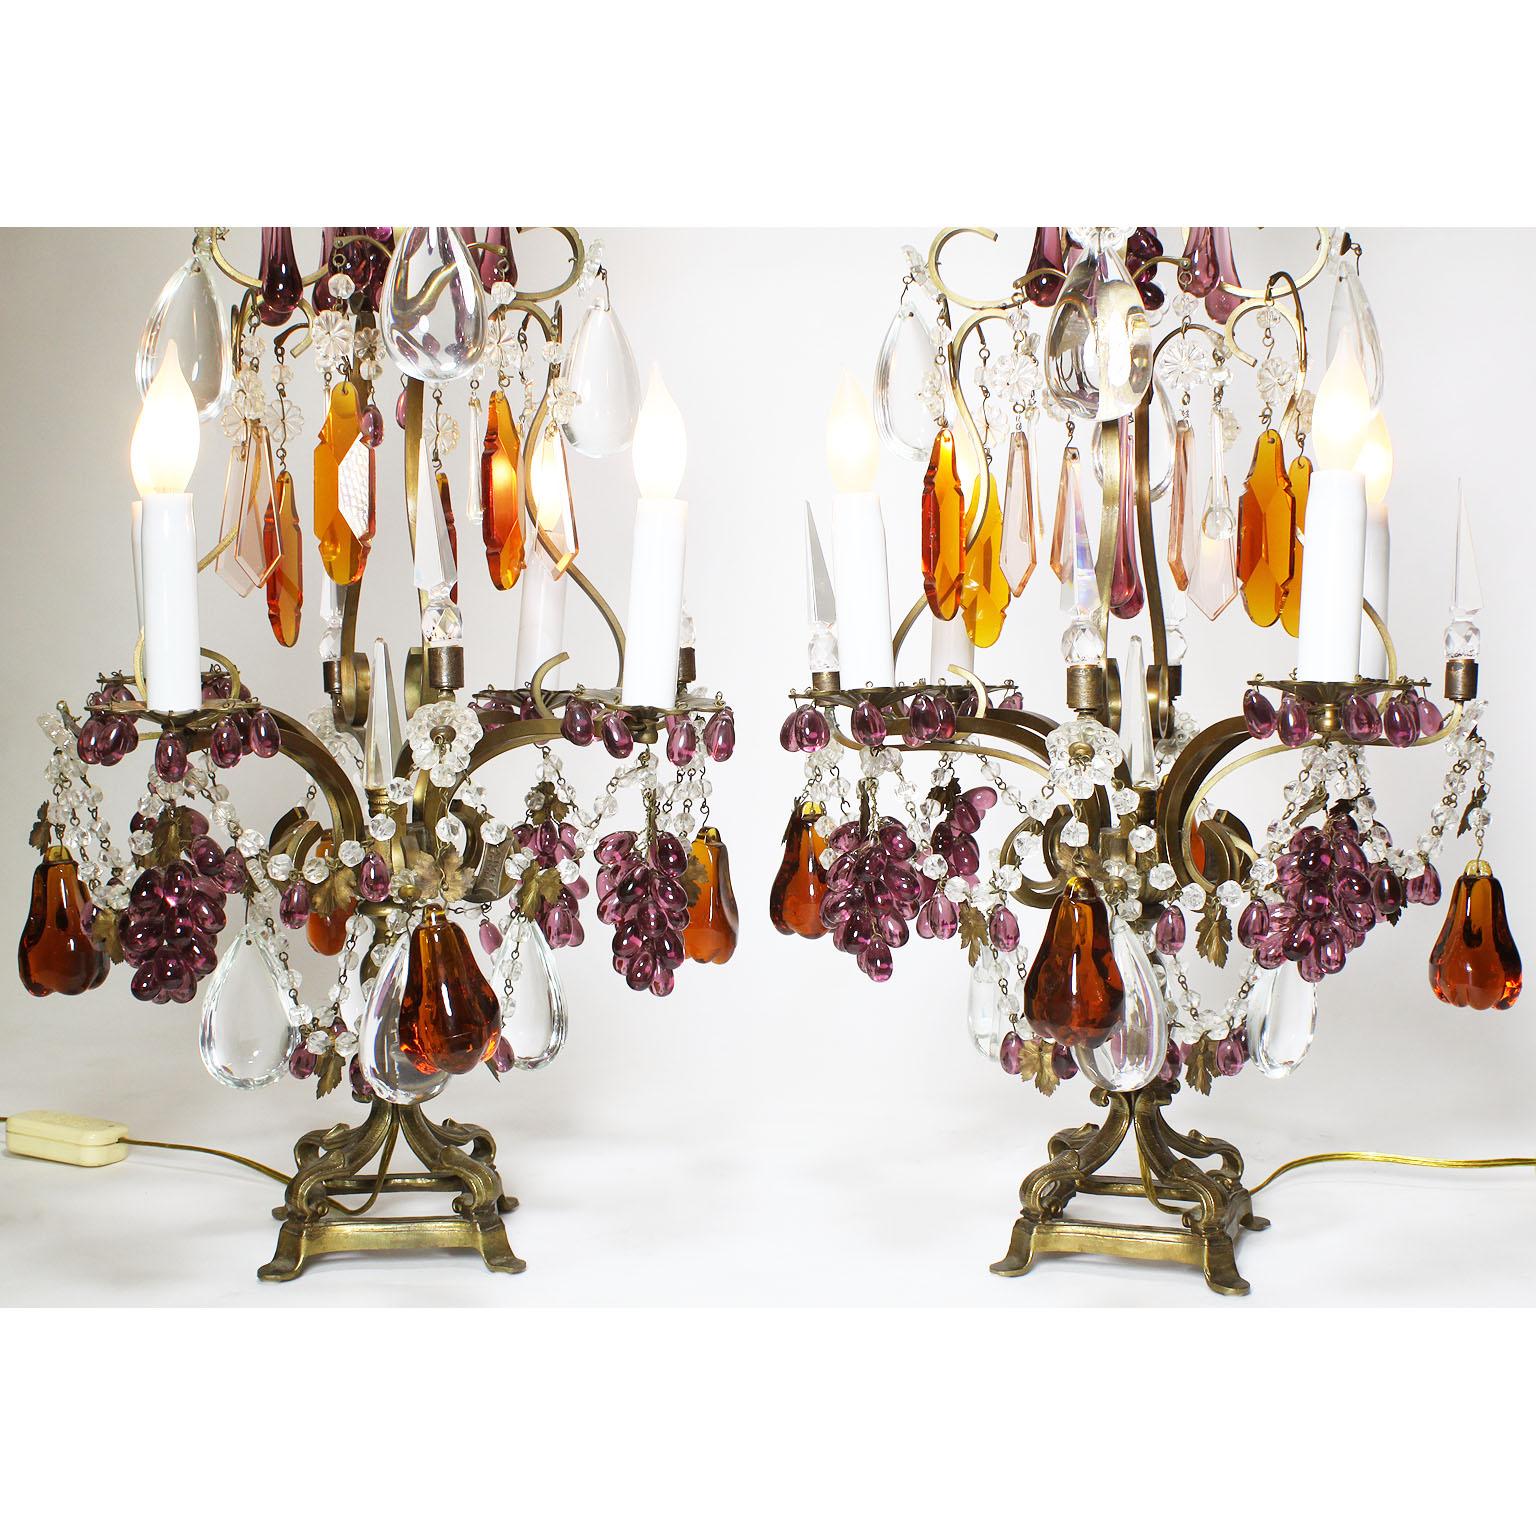 Paire de lampes de table girandoles à quatre lumières en verre clair taillé et coloré de Florentine, Italie, 19e-20e siècle. Le cadre en bronze à volutes avec quatre bras de chandelle à volutes, surmontés de gouttes de larmes en verre taillé, de